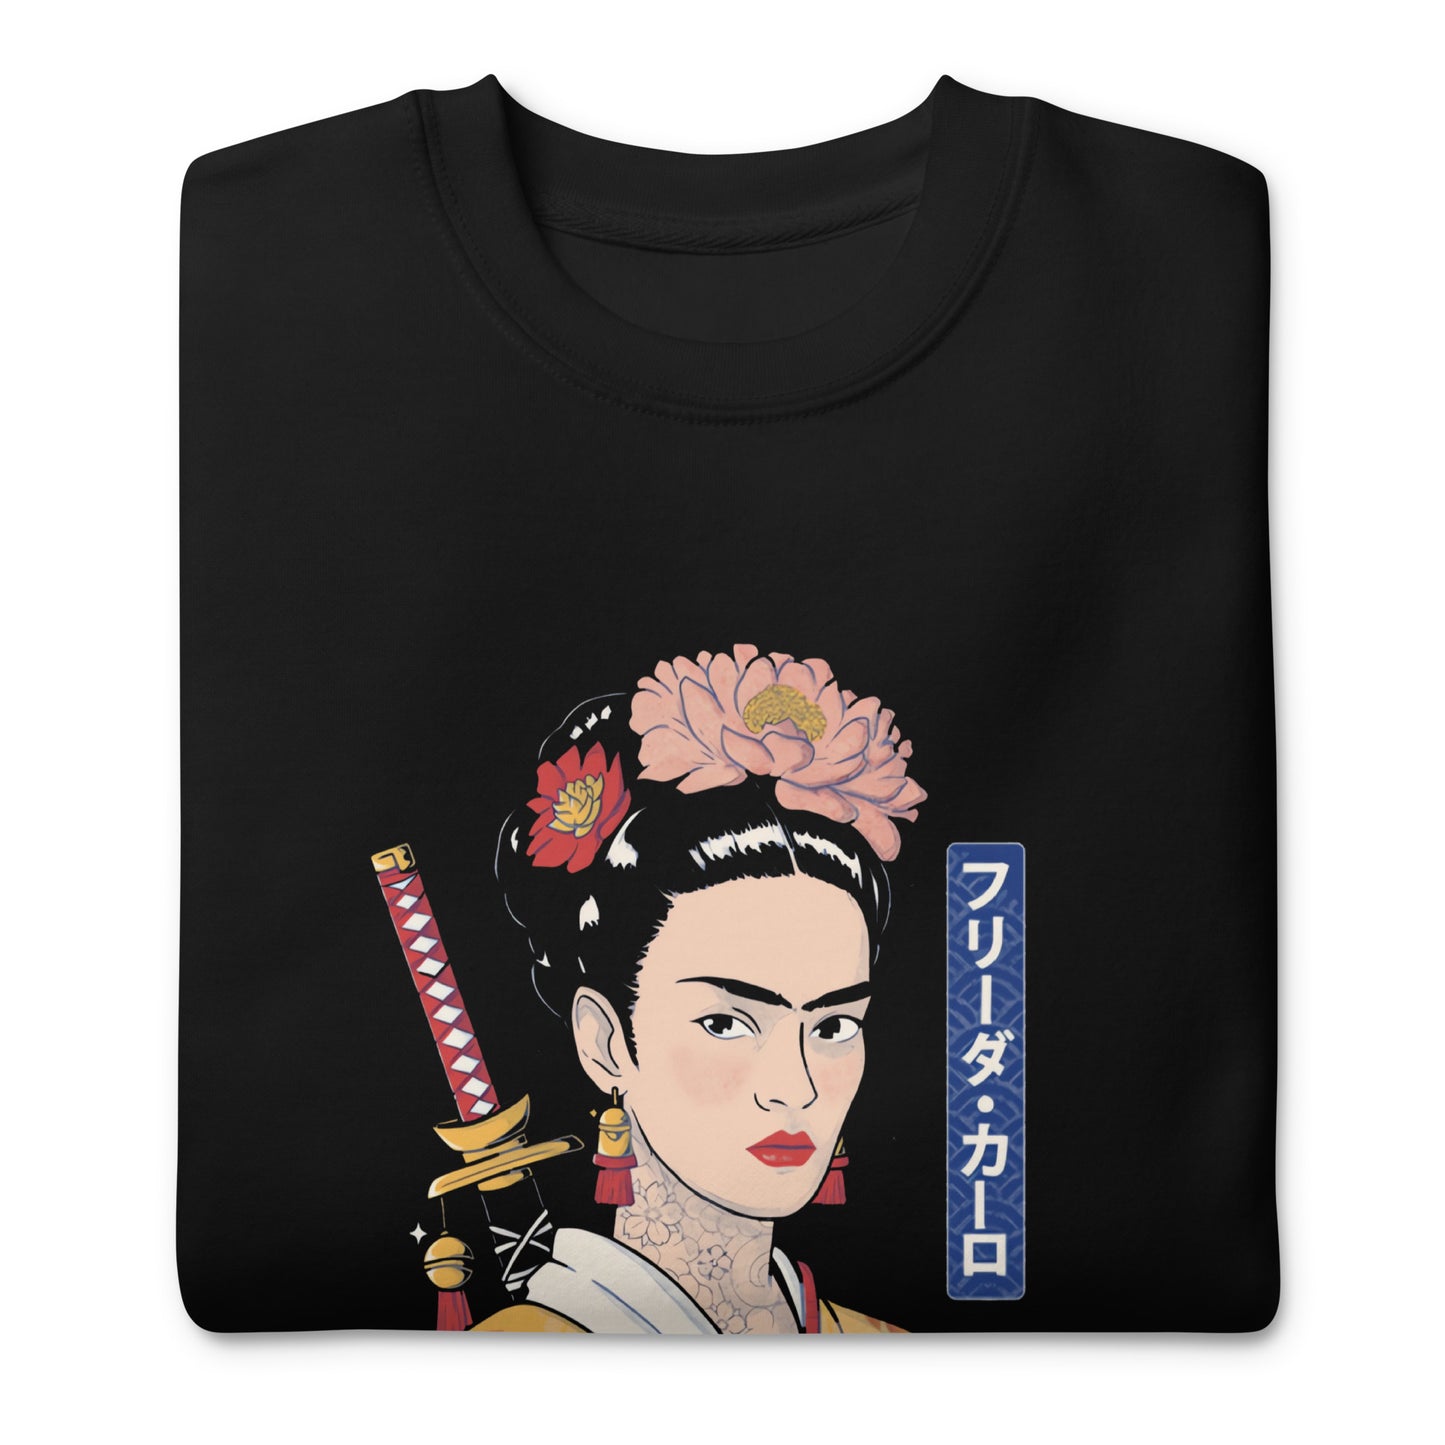 Suéter de Frida Samurai ,Descubre calidad excepcional y estampados duraderos. Encuentra estilo y orgullo en cada prenda. Compra ahora!